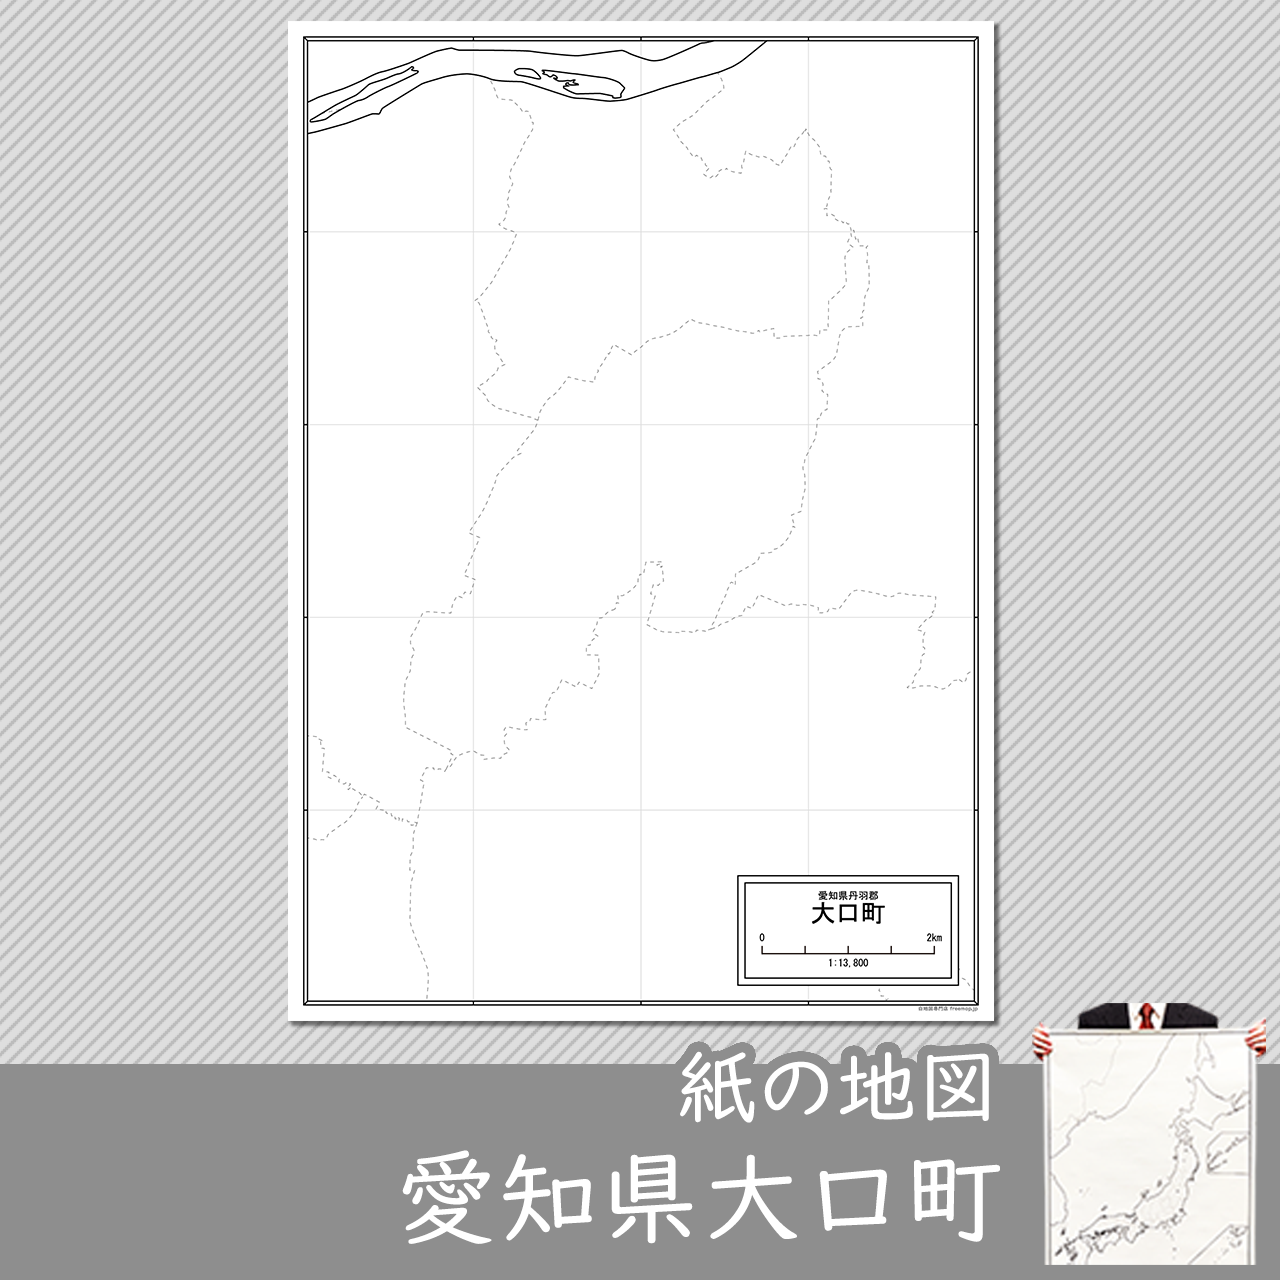 大口町の紙の白地図